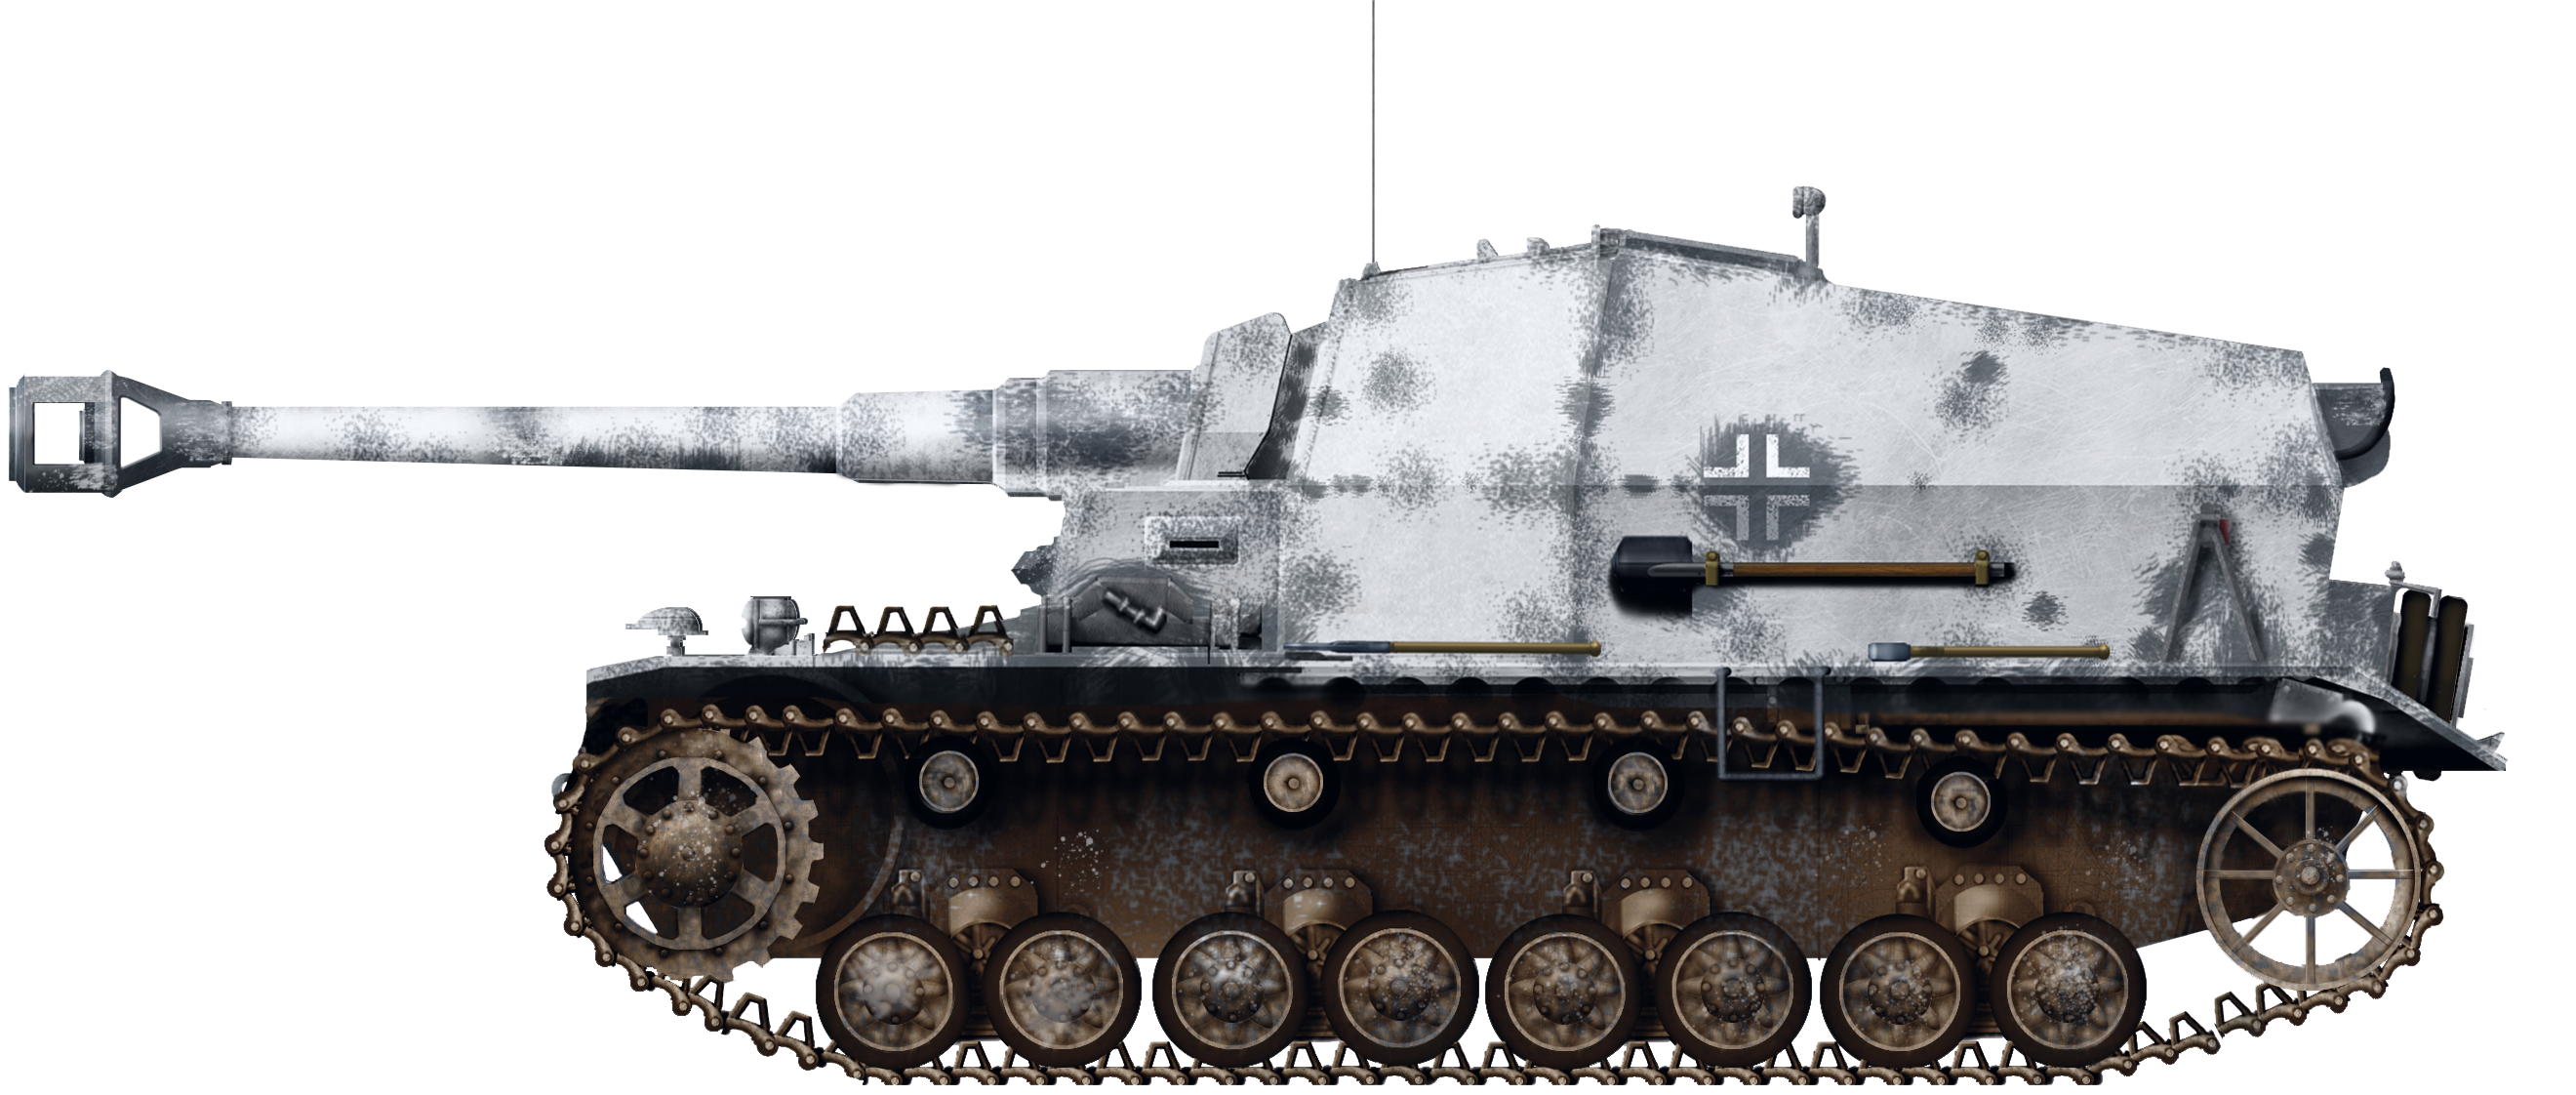 10.5 cm K gepanzerte Selbstfahrlafette Dicker Max - Tank Encyclopedia